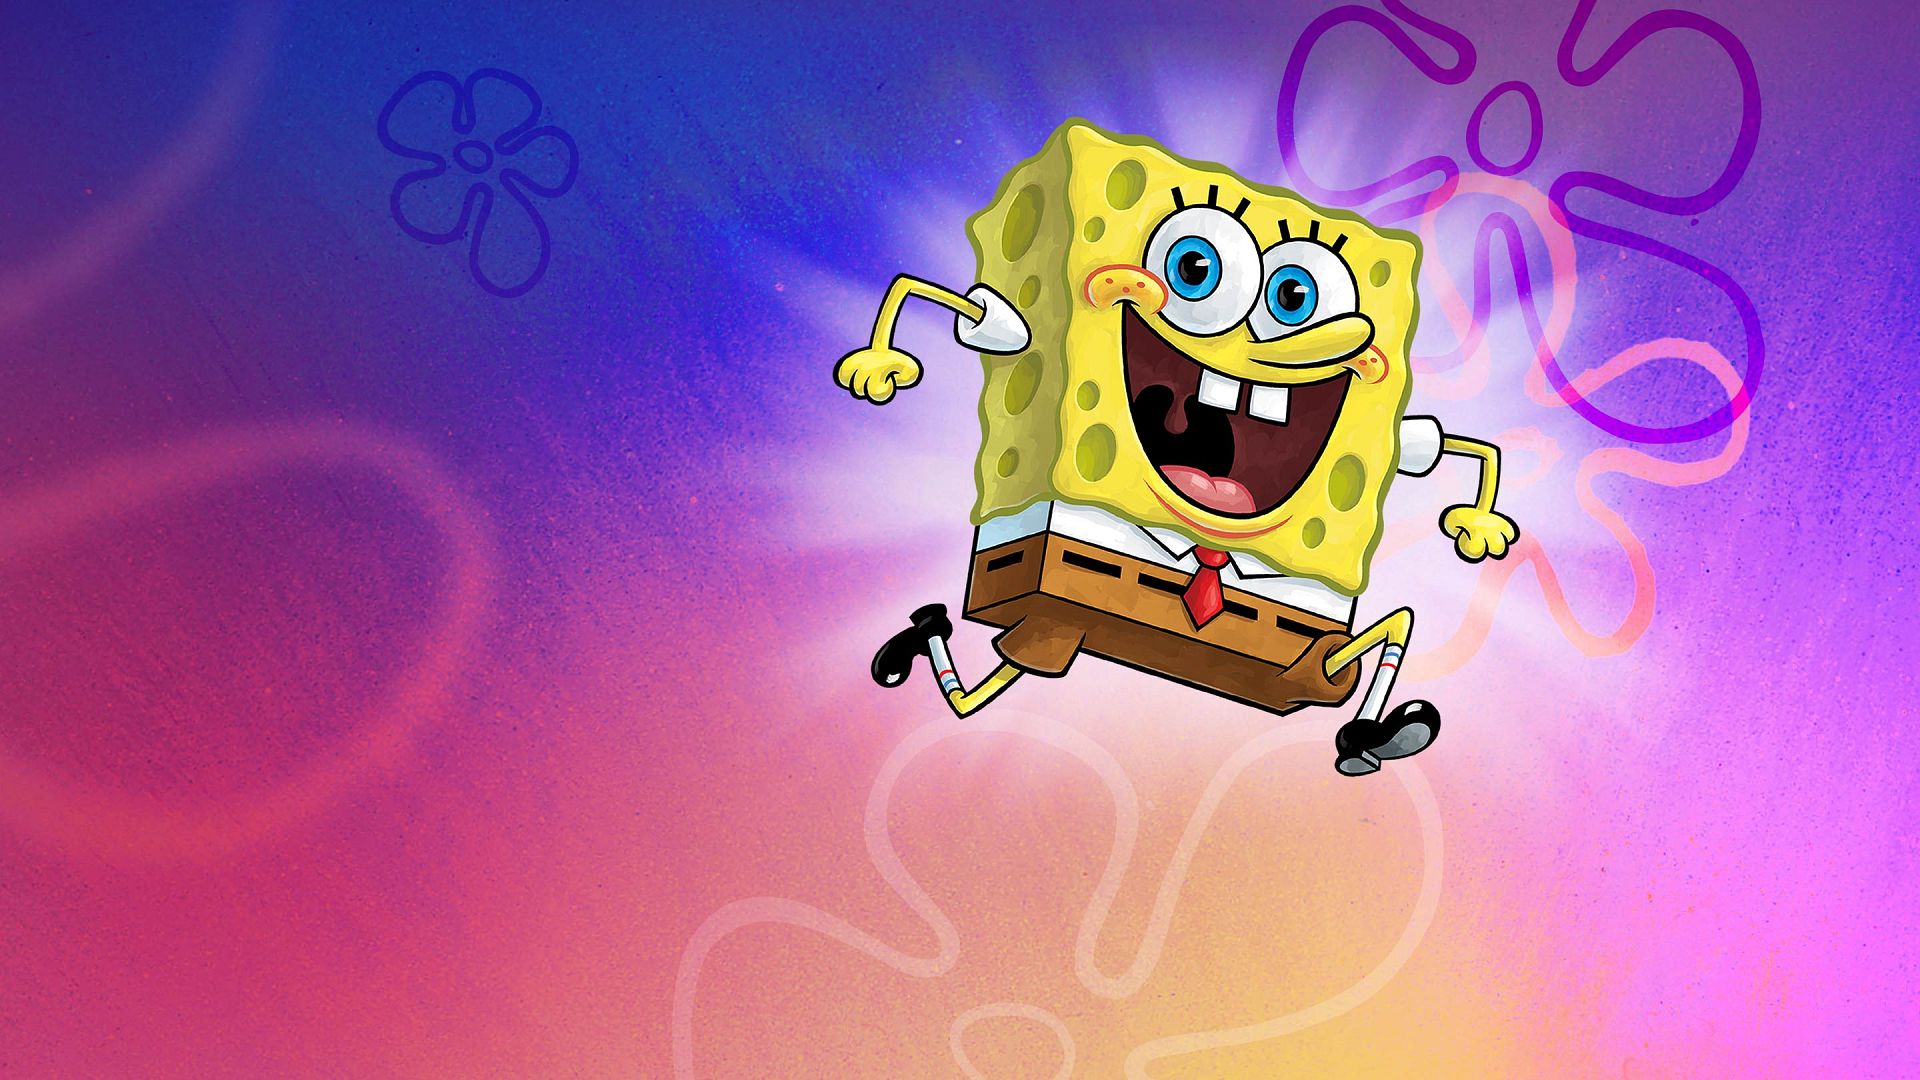 watch spongebob season 3 online free